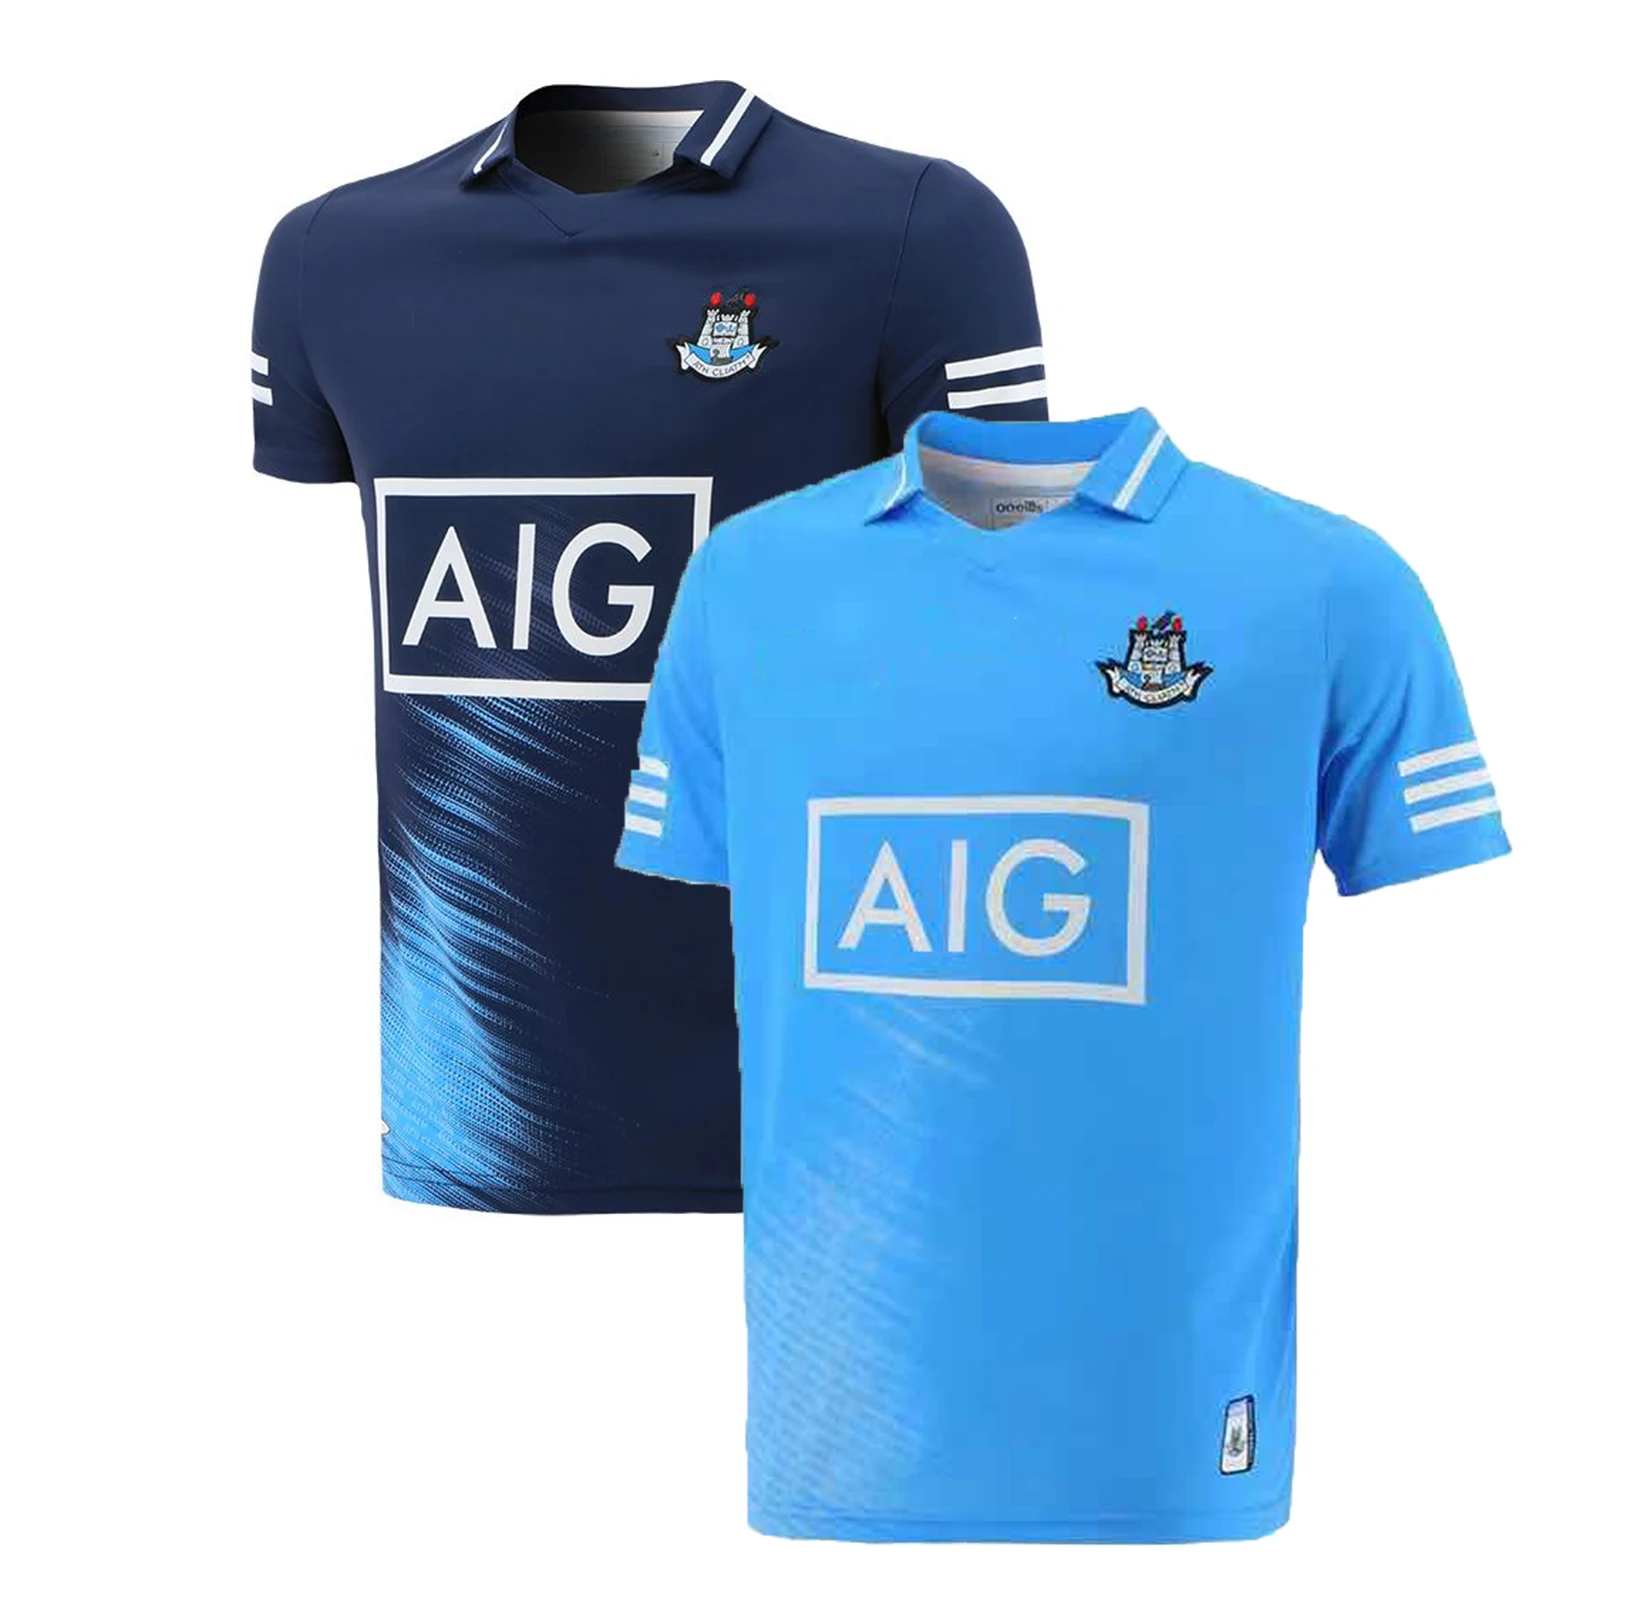 

2021 Ireland Dublin GAA Men's Jersey Rugby Jersey Sport Shirt S-5XL